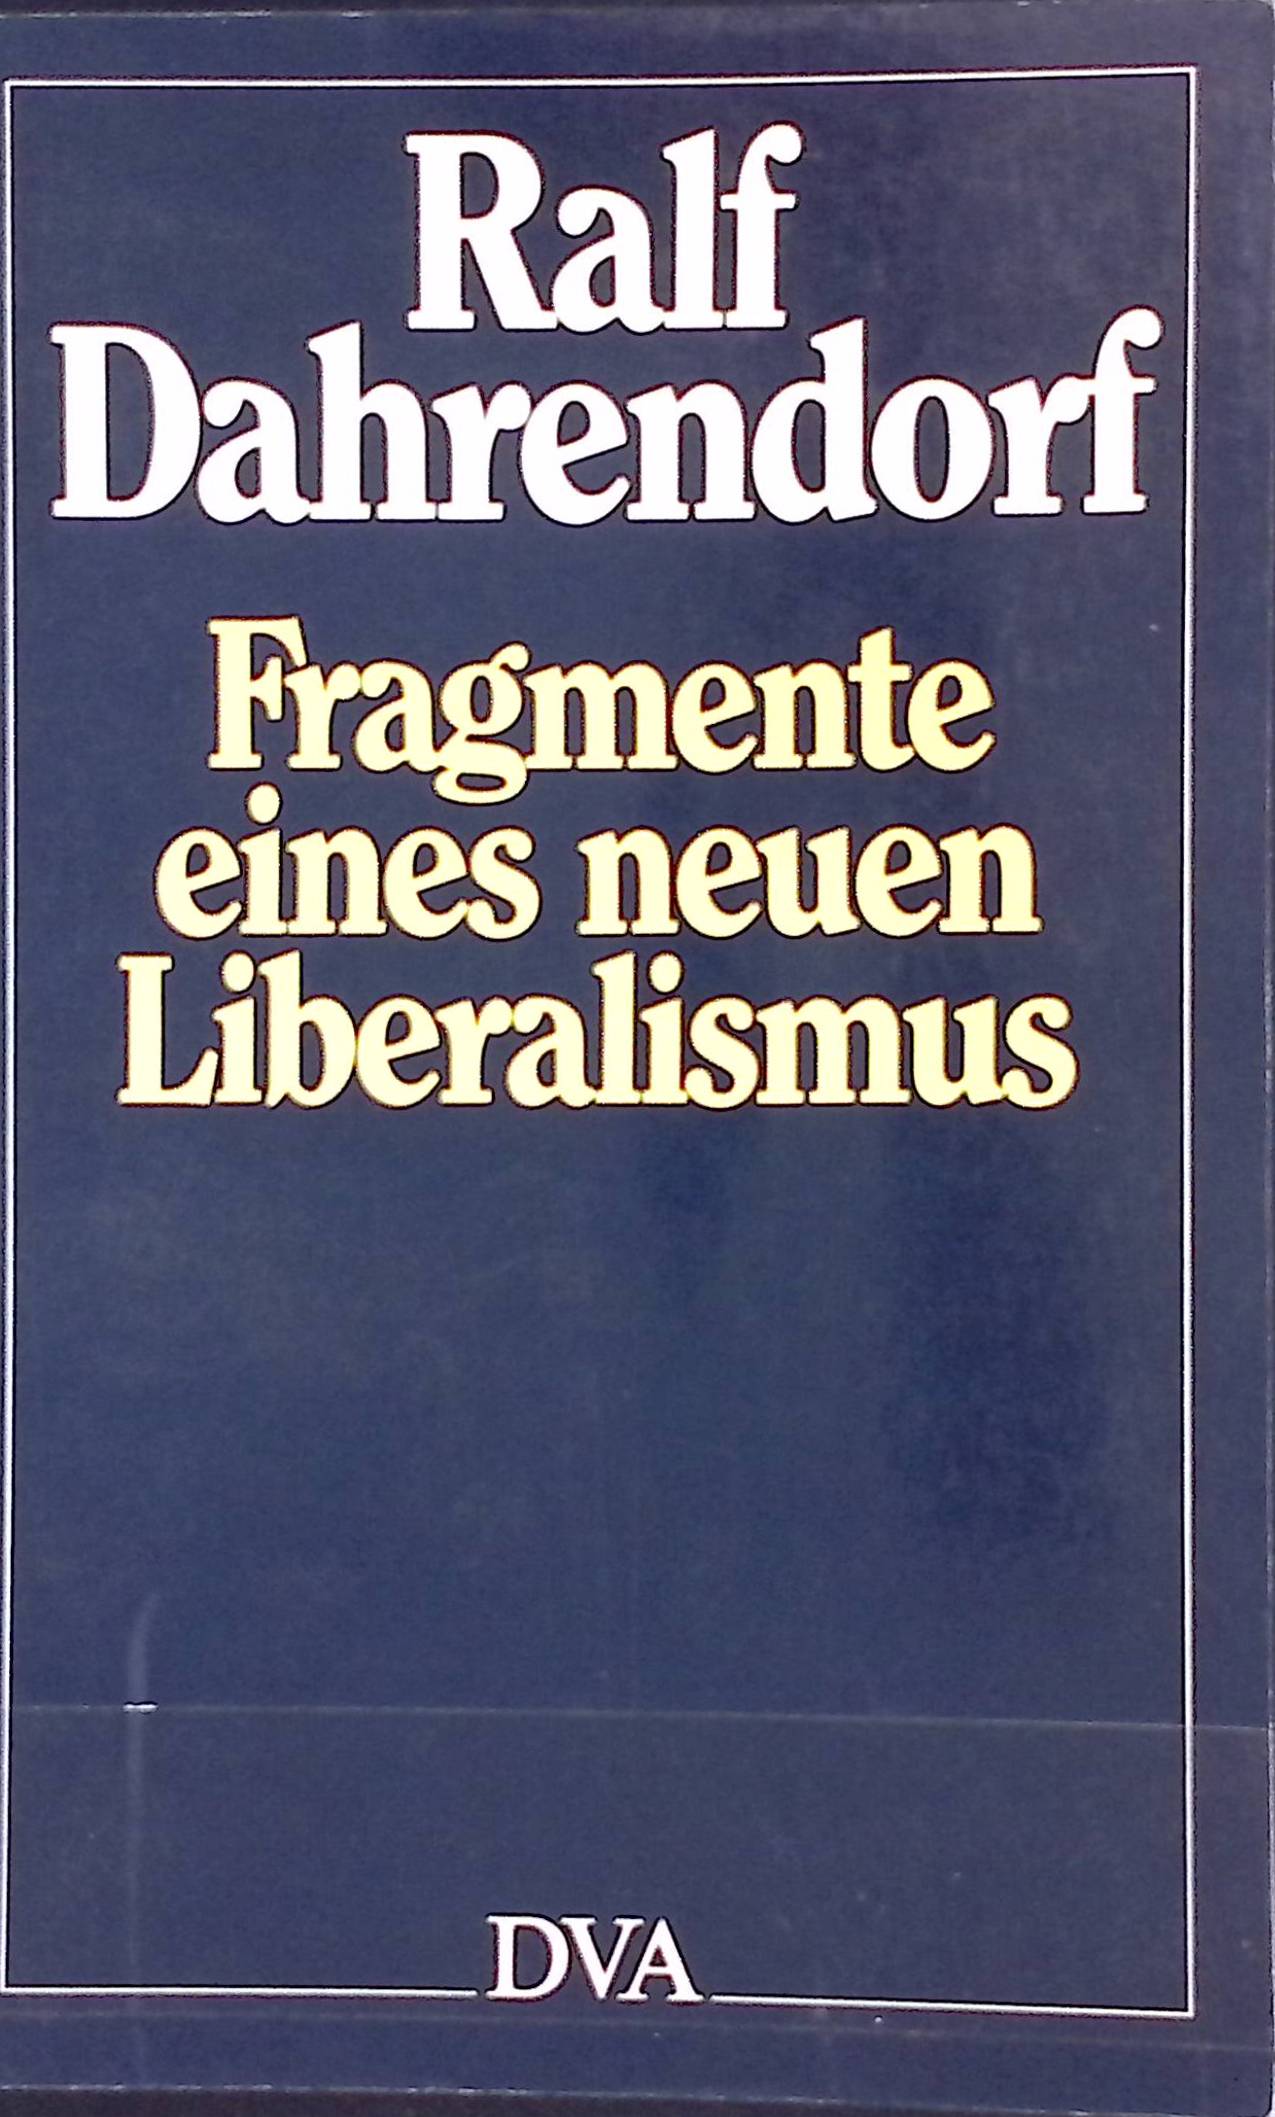 Fragmente eines neuen Liberalismus. - Dahrendorf, Ralf